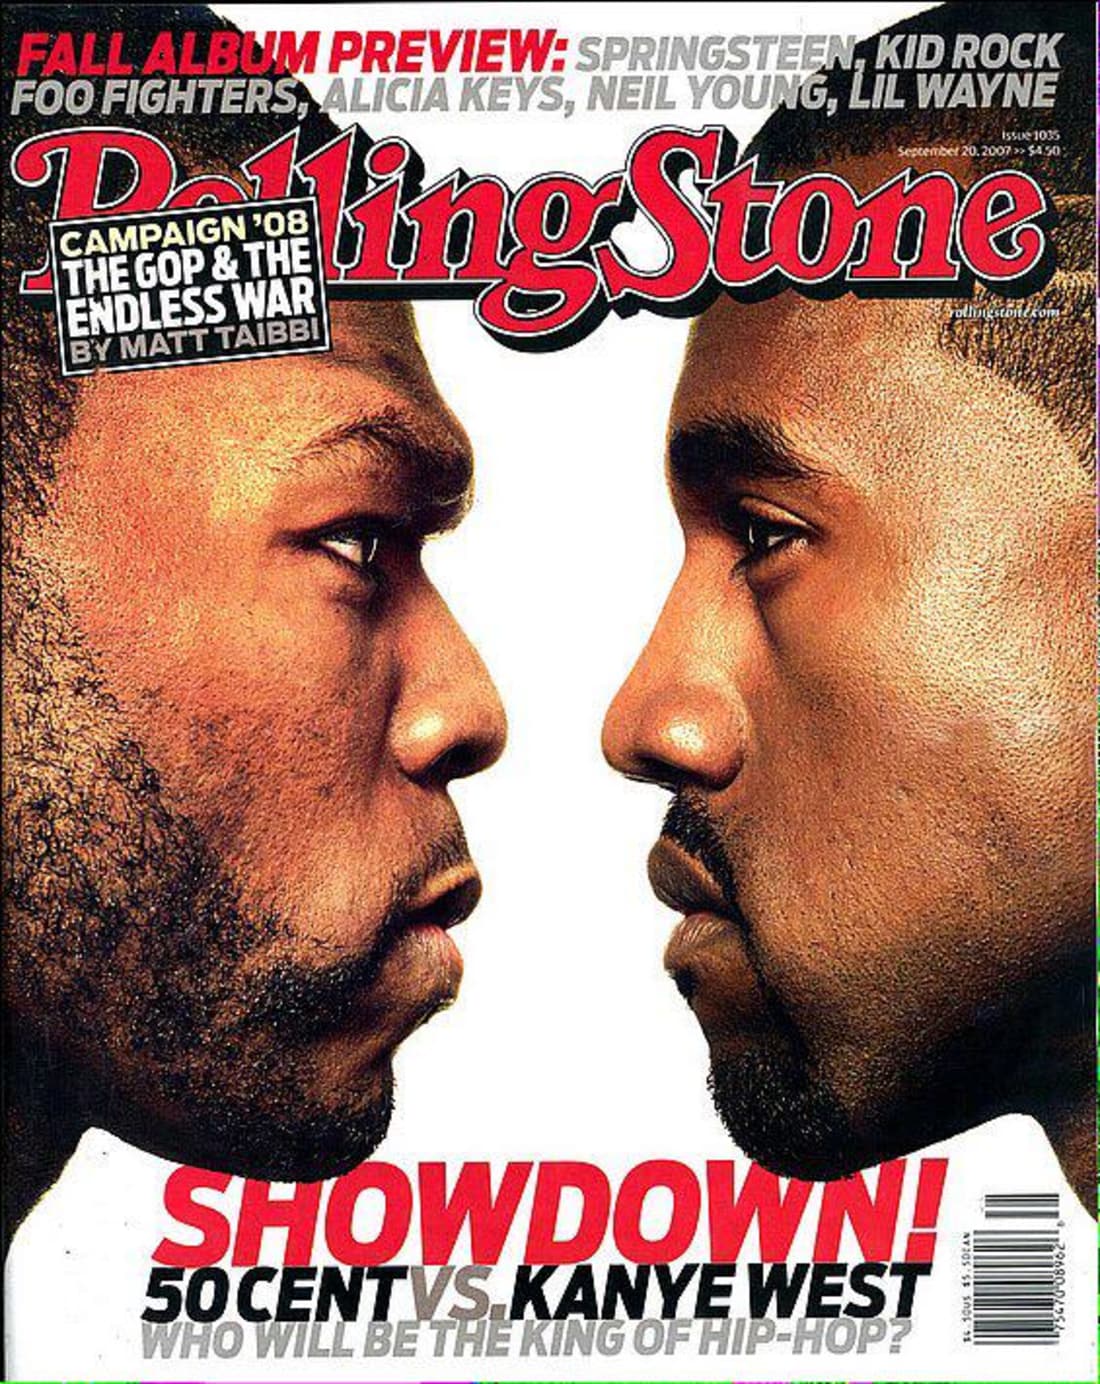  50 Cent vs Kanye West